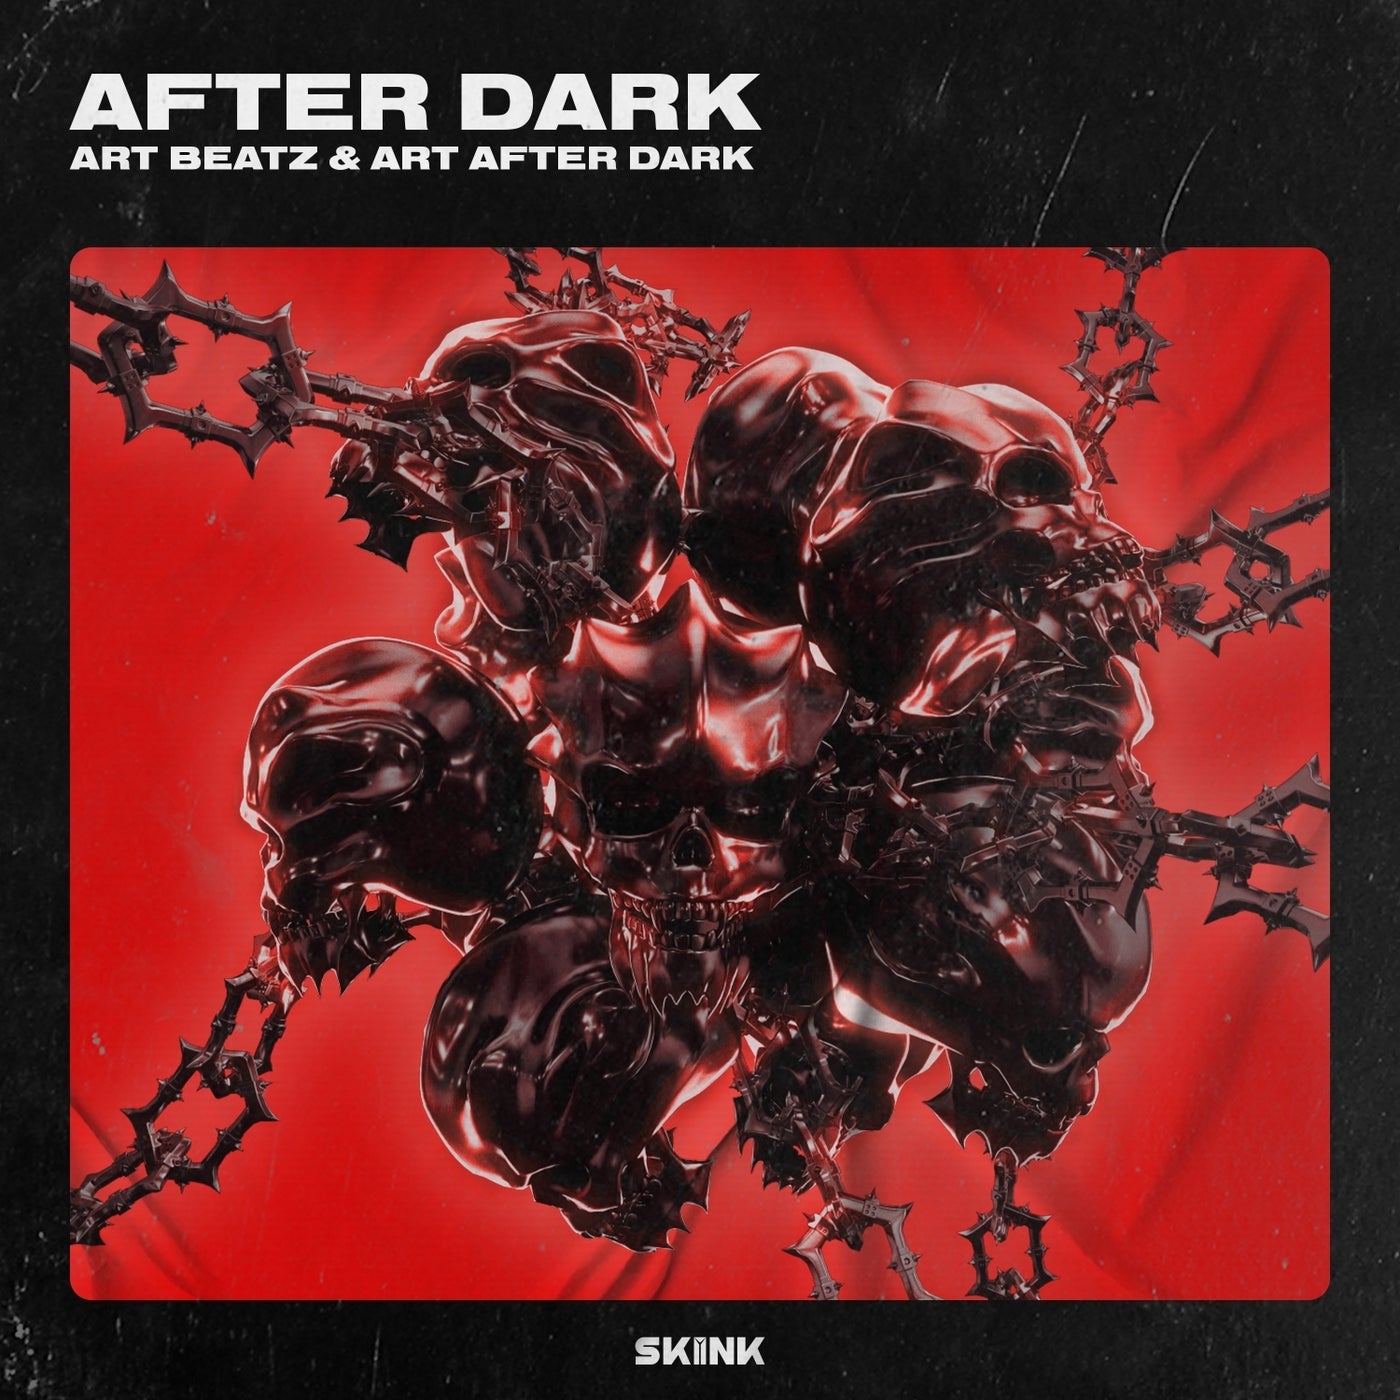 After dark mp3. After Dark. Art Beatz, Art after Dark - after Dark. After Dark обложка. Арт альбом after Dark.